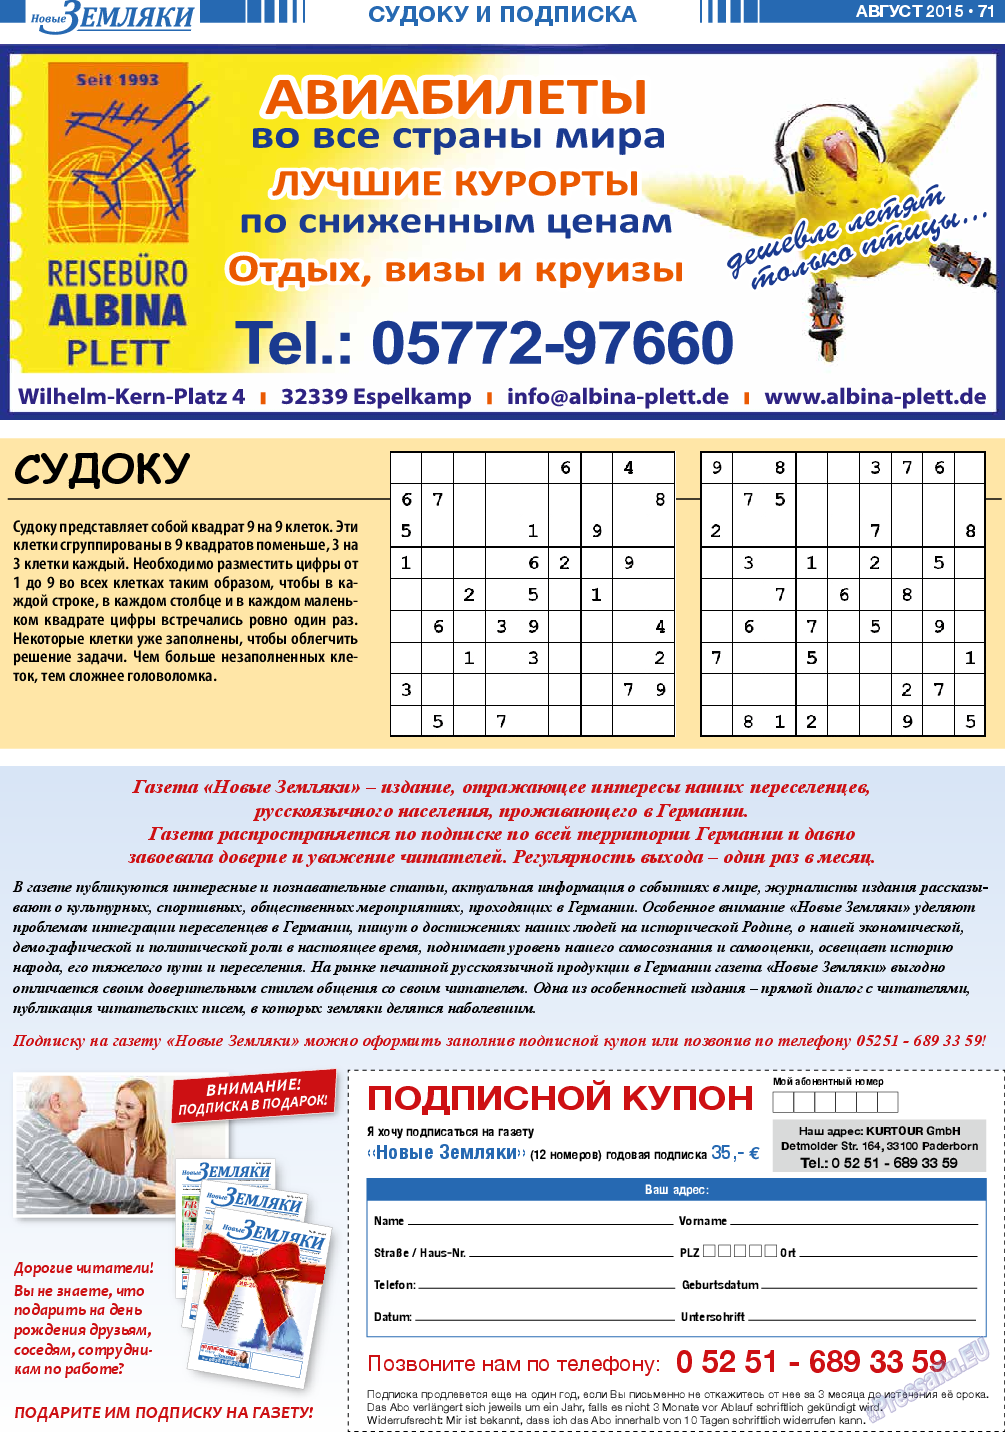 Новые Земляки, газета. 2015 №8 стр.71